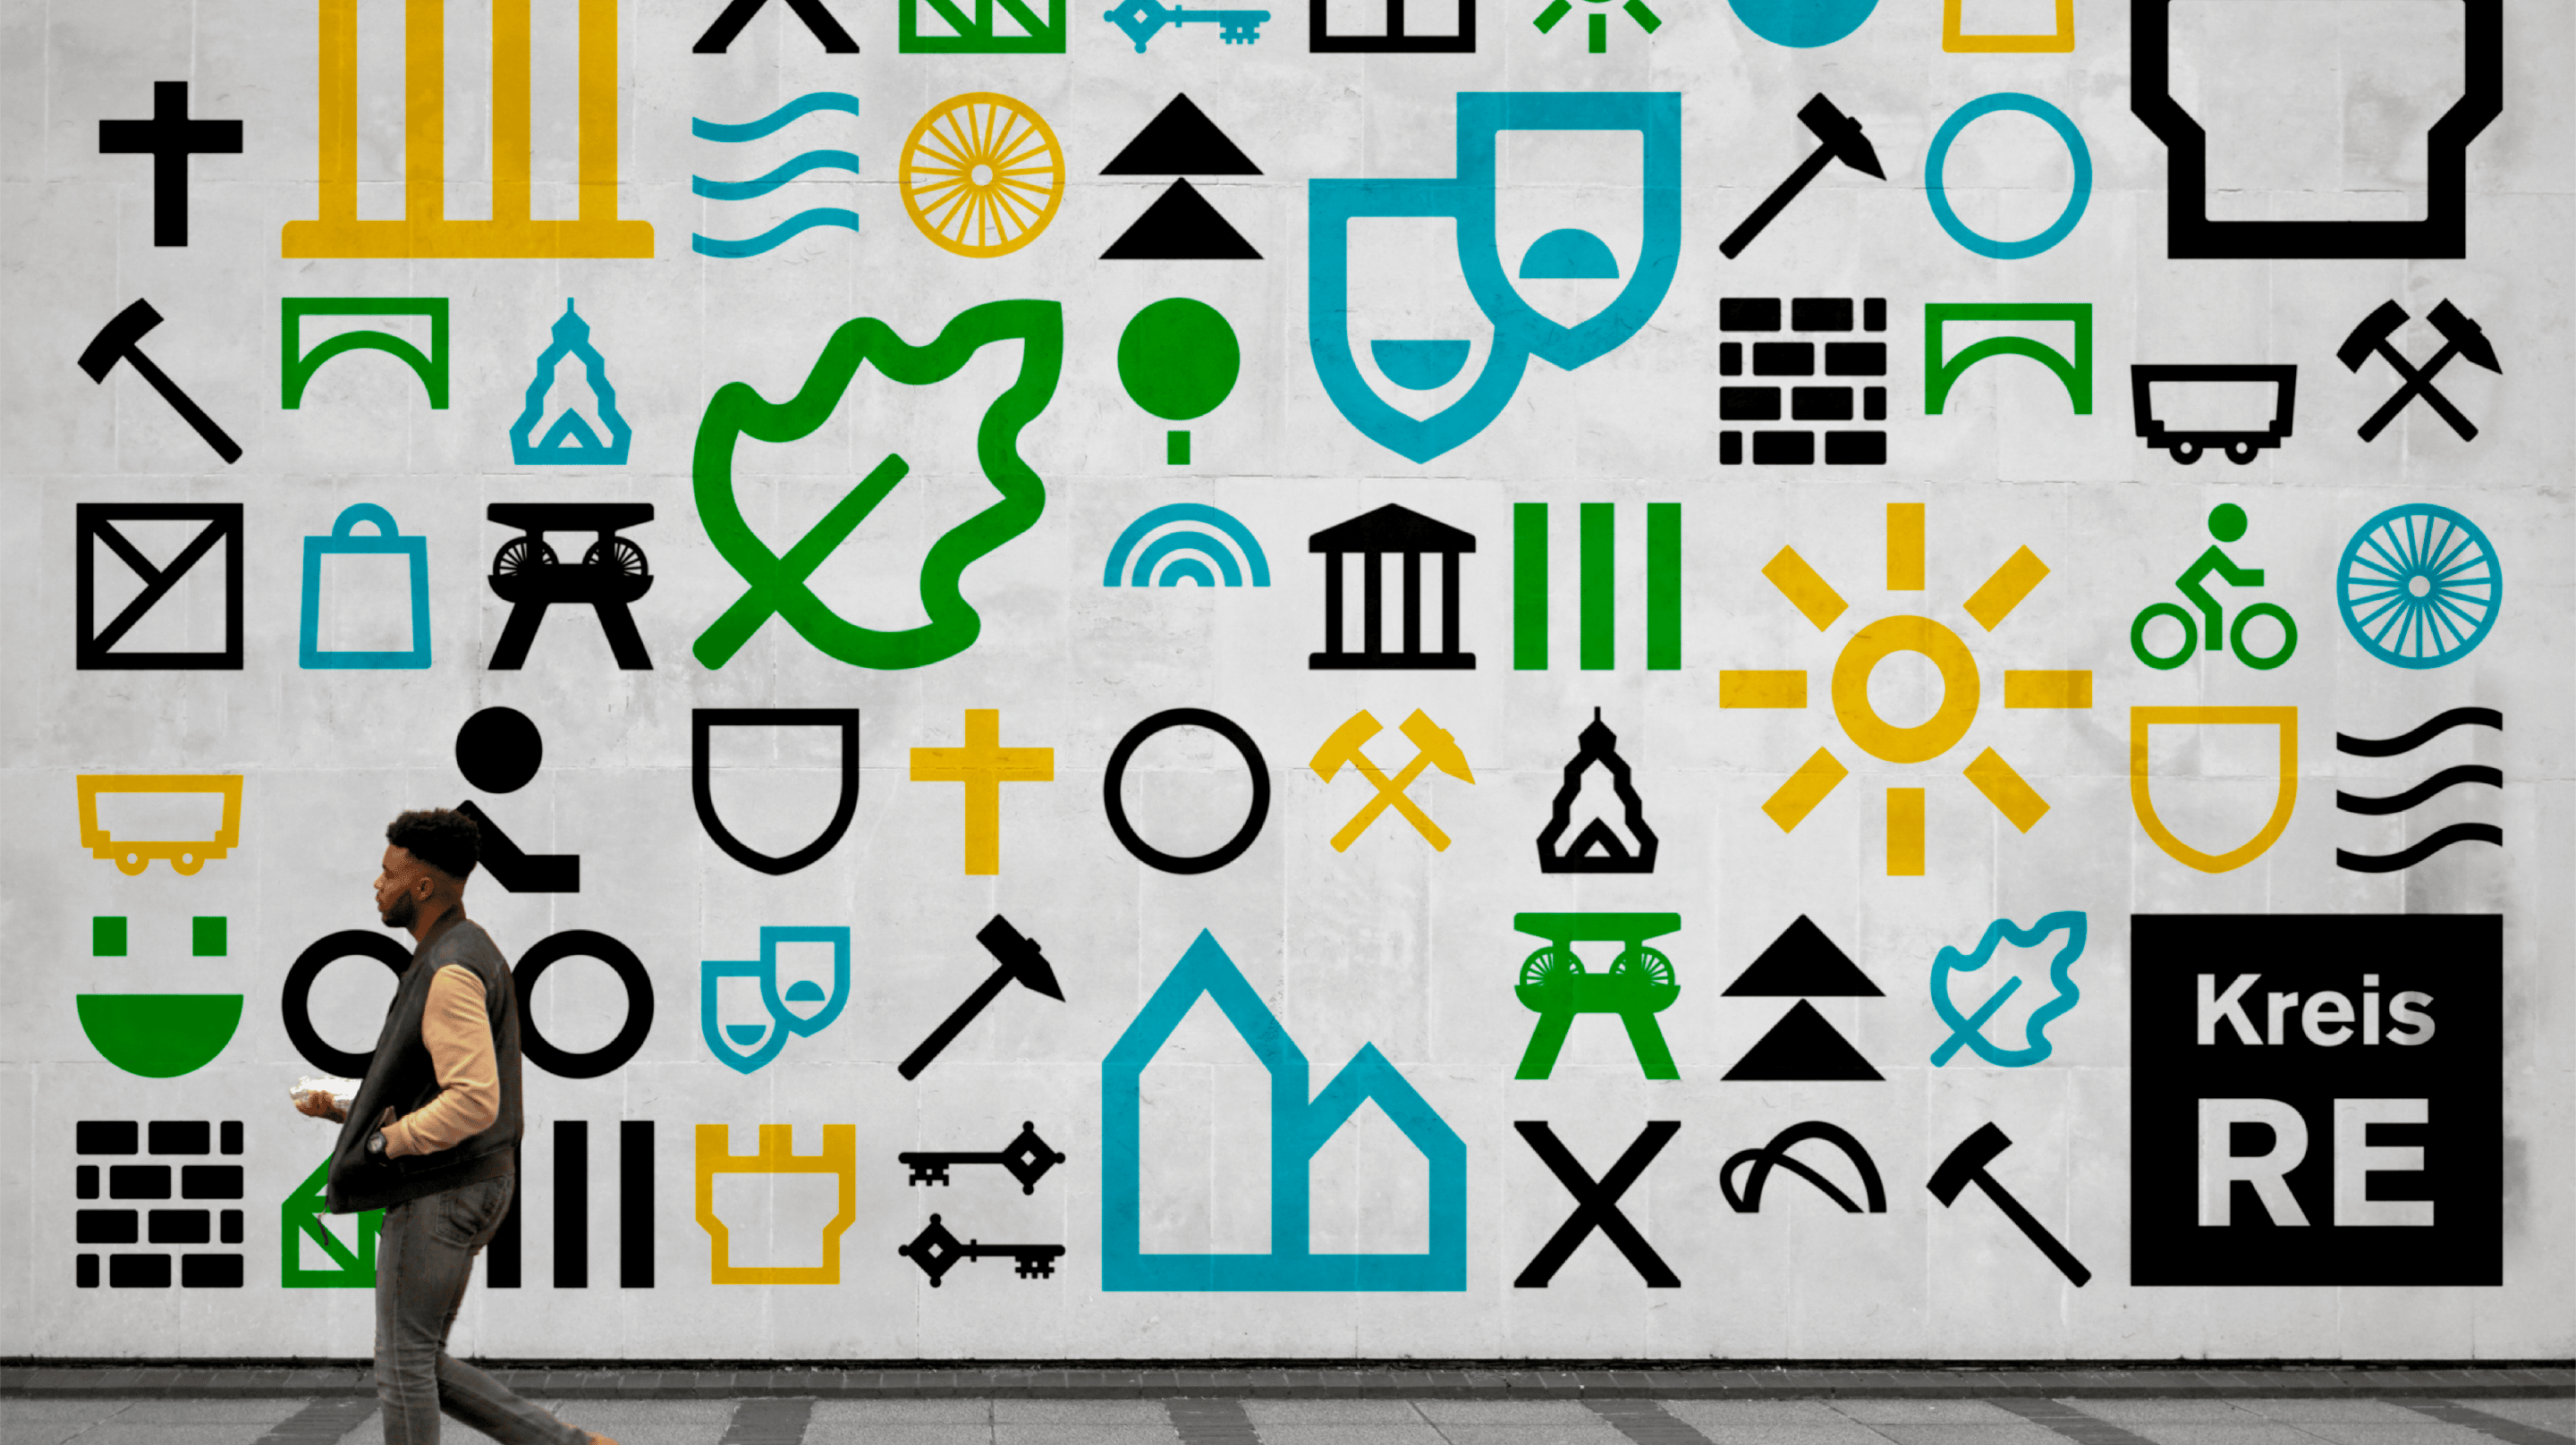 Iconsystem für einen Städtekreis mit unterschiedlichen Elementen aus den Wappen